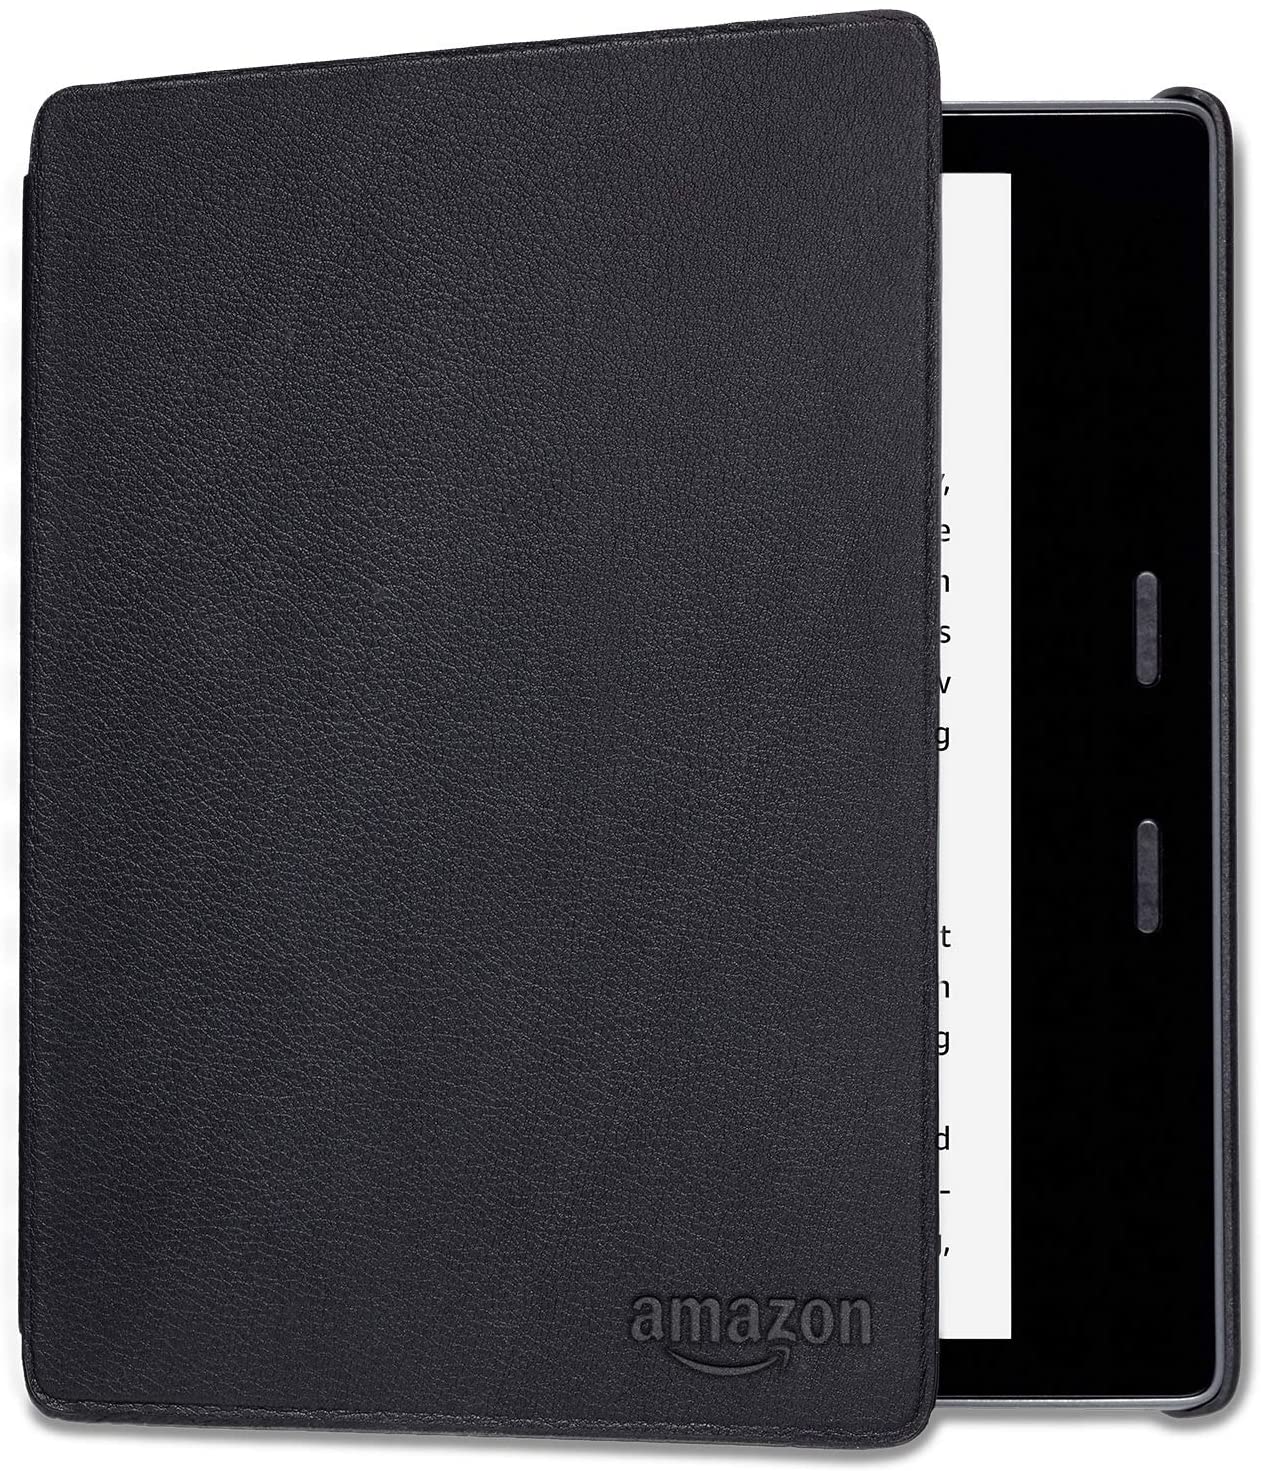 Оригинальный кожаный чехол для Amazon Kindle Oasis 9-10 Gen. цвет черный, нат.кожа